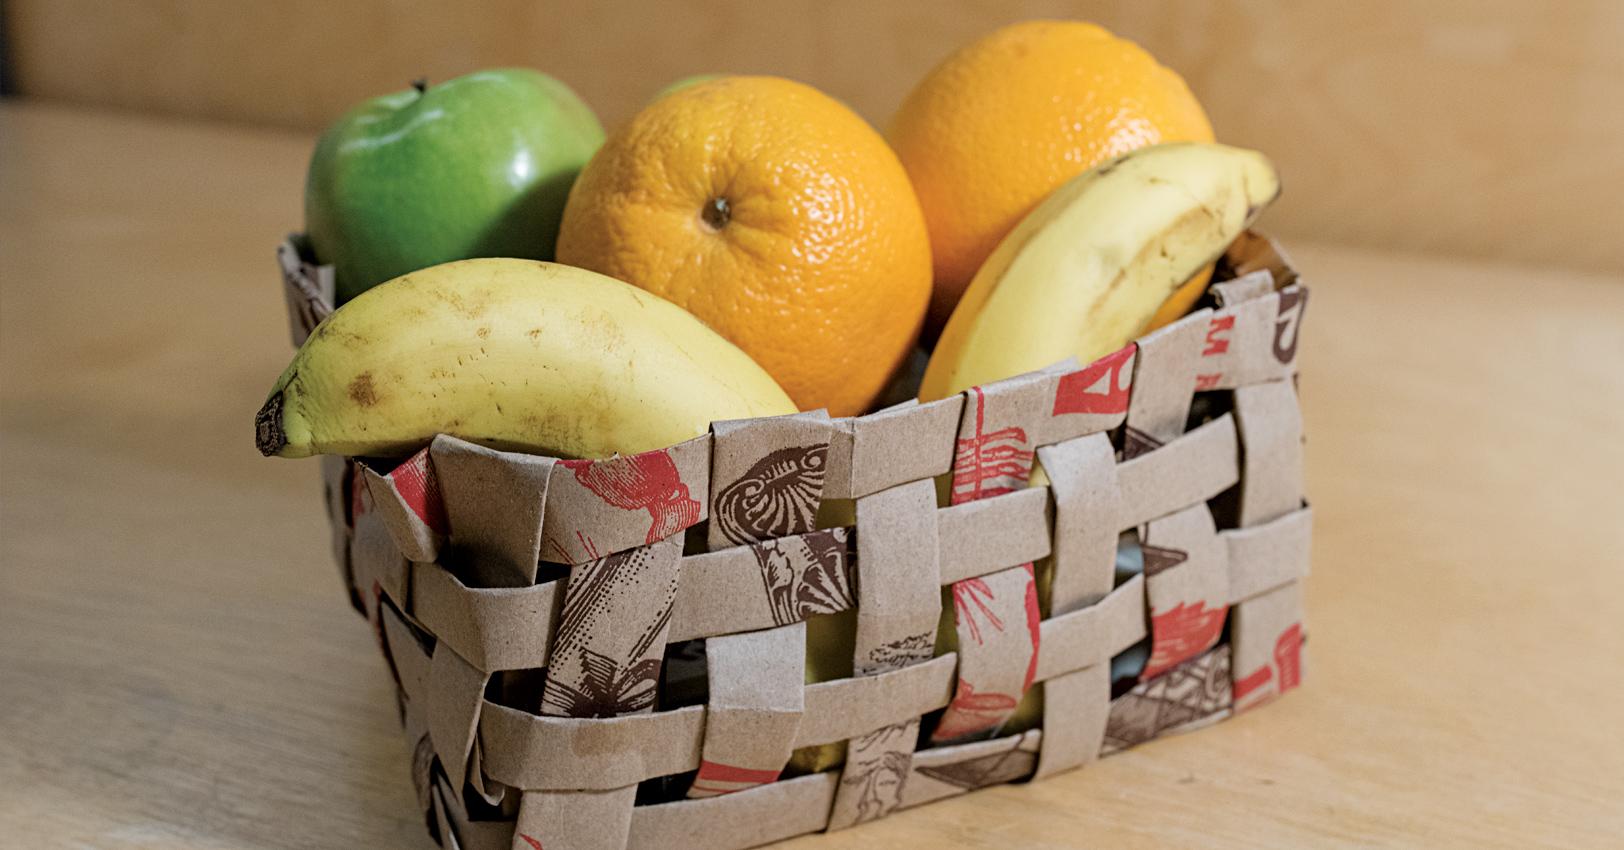 DIY Paper Bag Baskets - Trick or Treat & Apple Picking Baskets